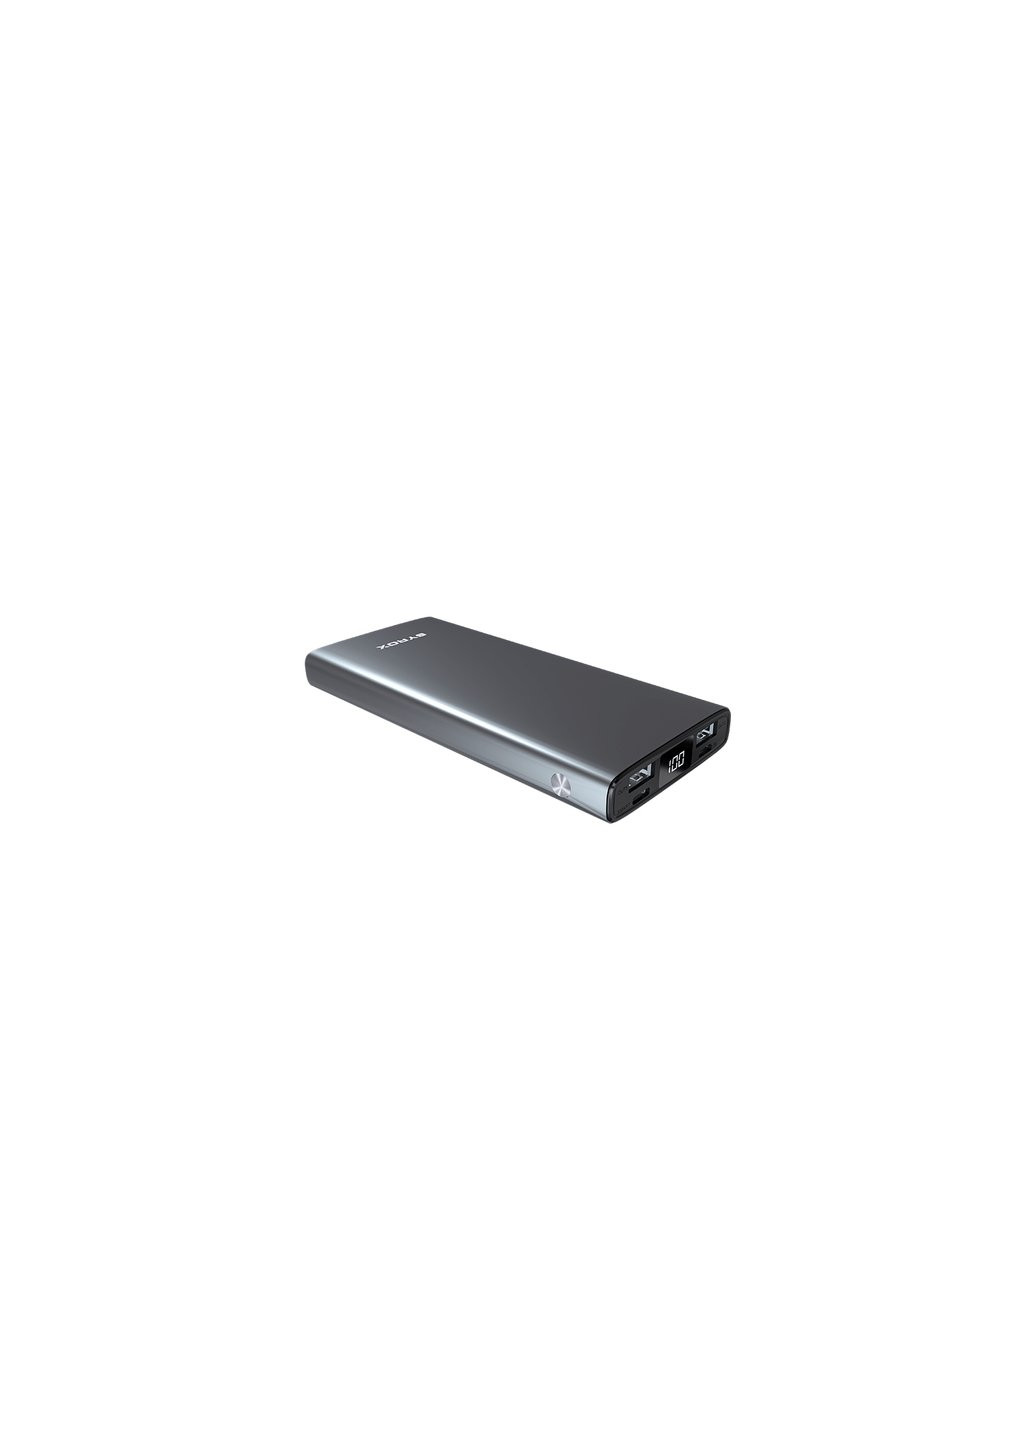 Батарея универсальная PB117 10000mAh, USB*2, Micro USB, Type C, grey (PB117_grey) Syrox